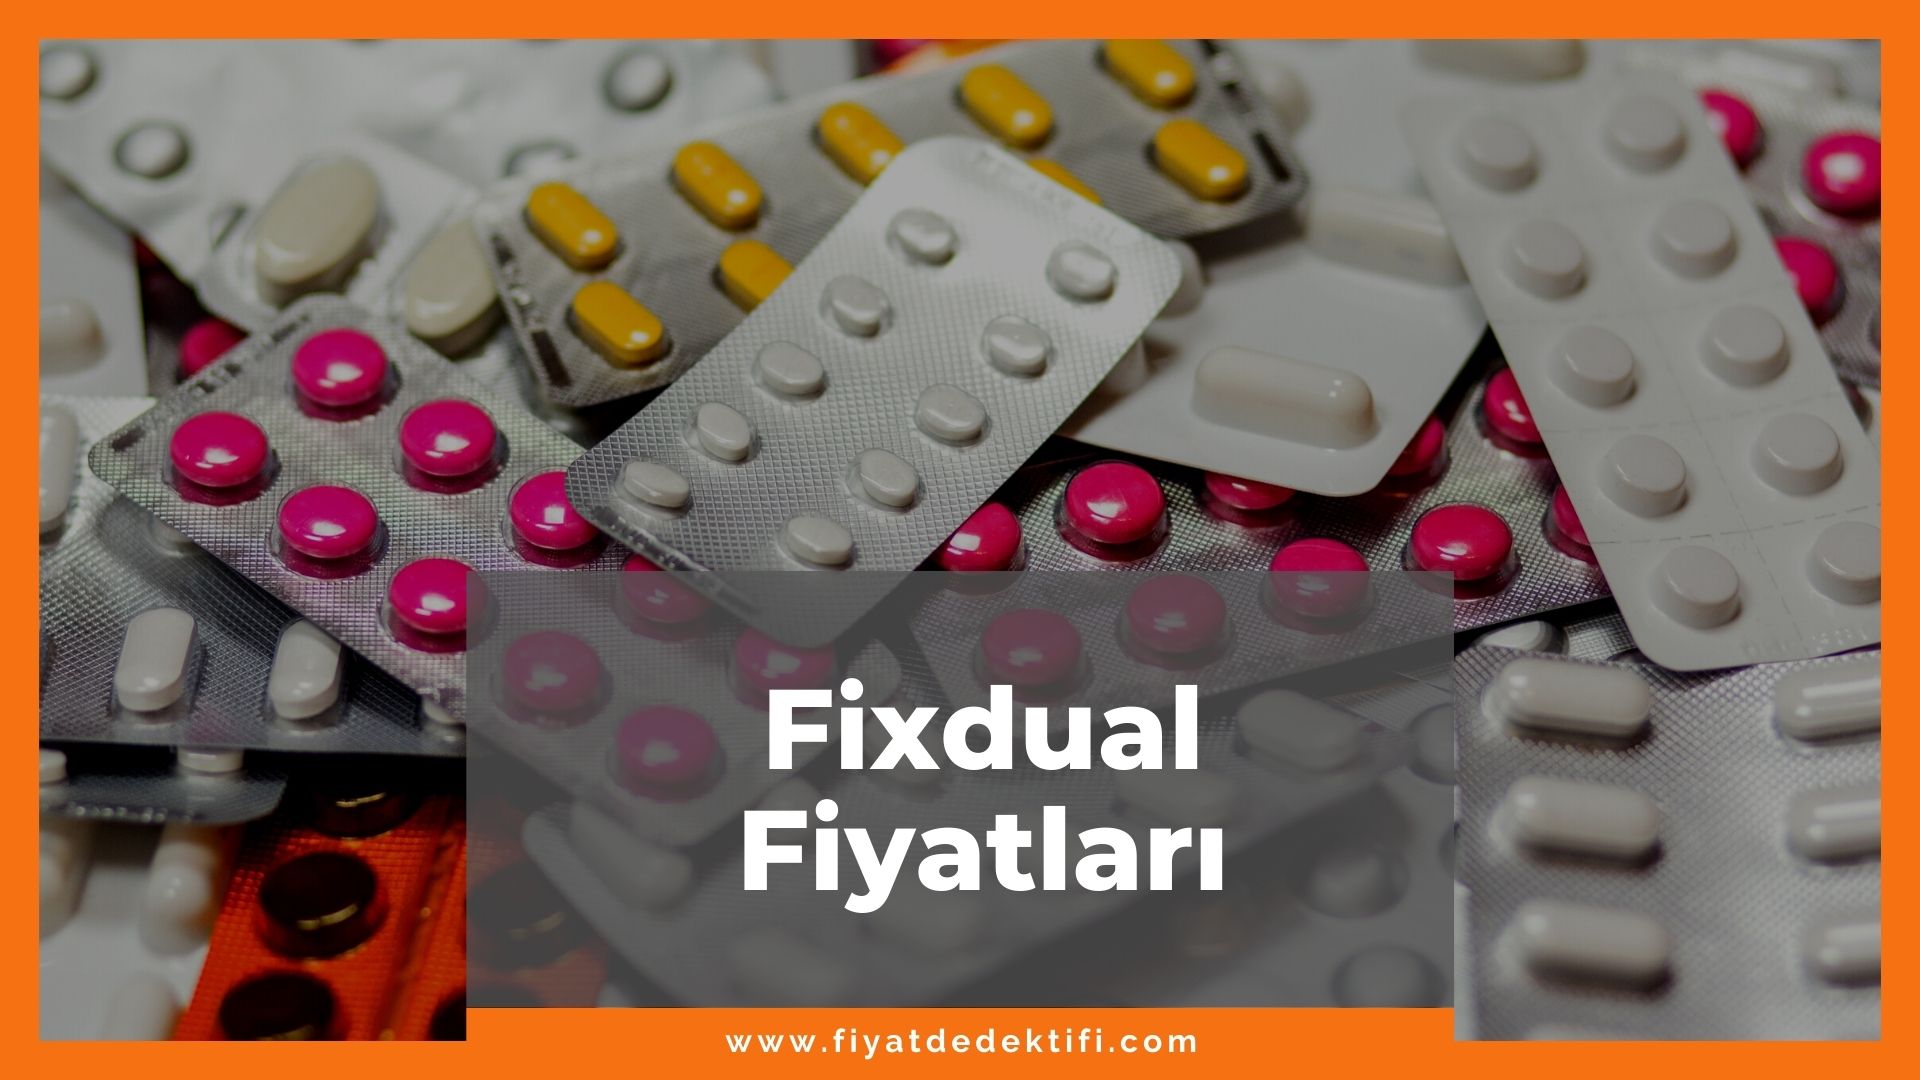 Fixdual Fiyat 2021, Fixdual 5 mg/10 mg 30 Film Tablet Fiyatı, fixdual zamlandı mı, fixdual zamlı fiyat ne kadar kaç tl oldu